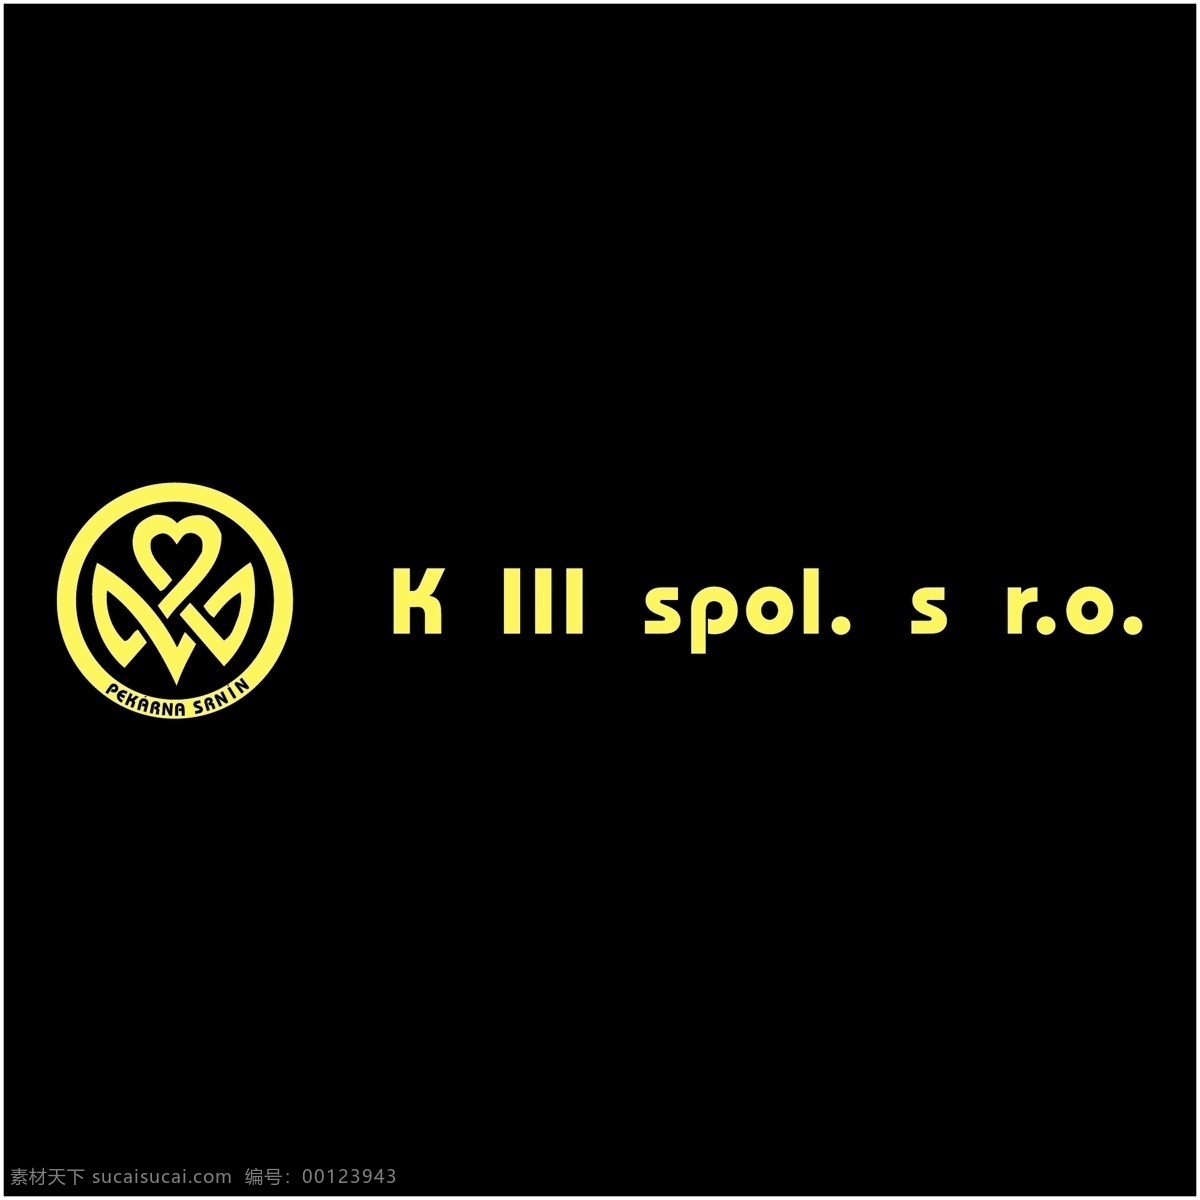 k logo矢量 第三 侏罗纪 公园 iii logo 标志 矢量 eps向量 向量iii 矢量图 建筑家居